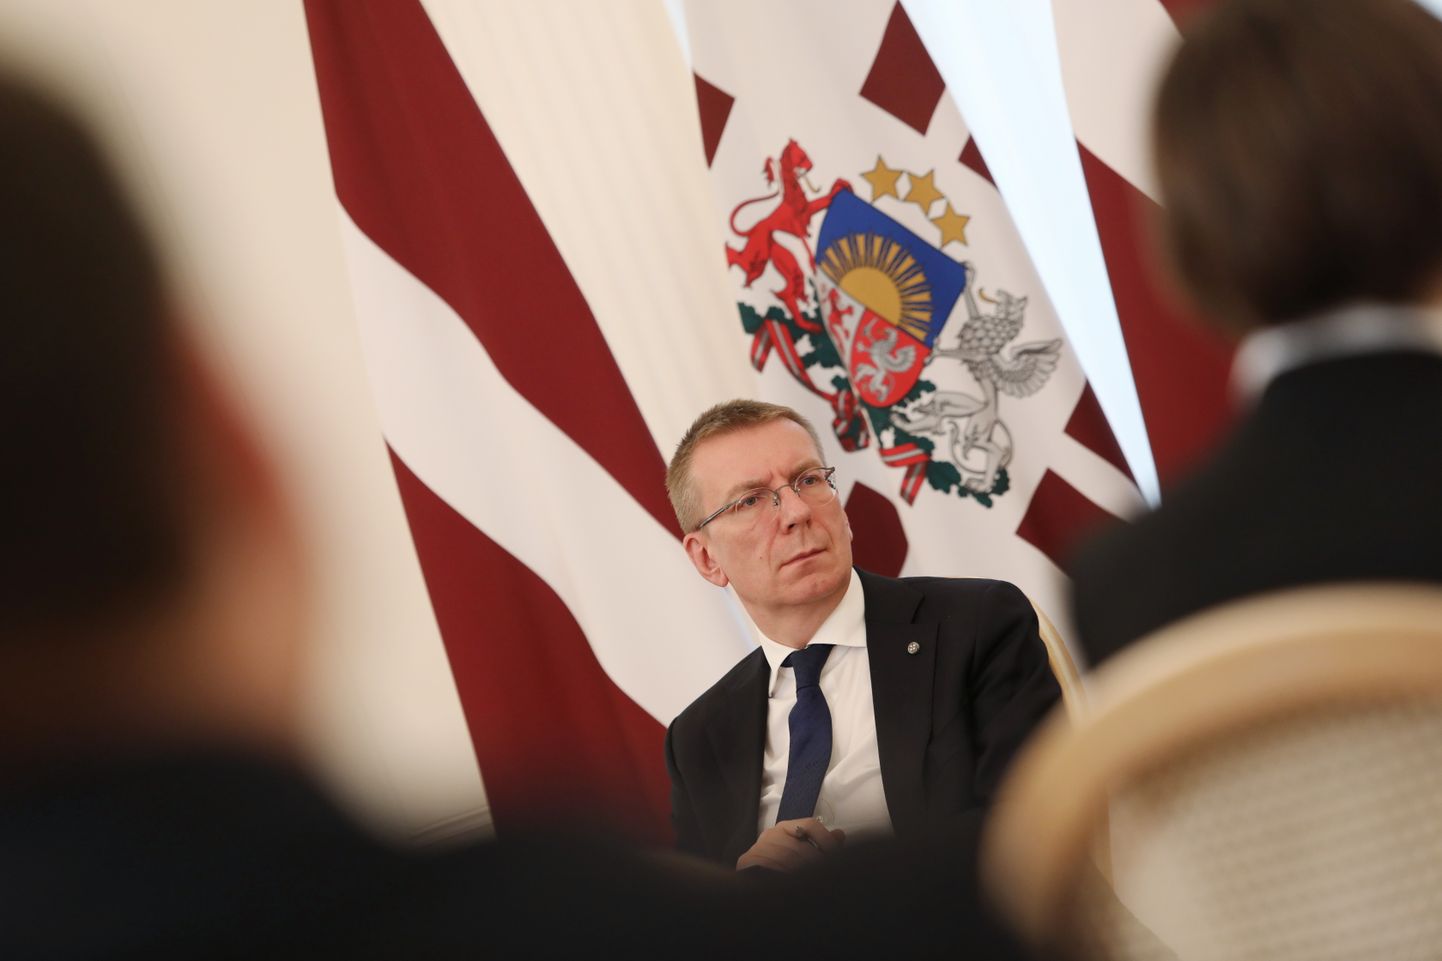 Valsts prezidents Edgars Rinkēvičs piedalās diskusijā Rīgas pilī par sabiedrisko mediju turpmāko attīstību.